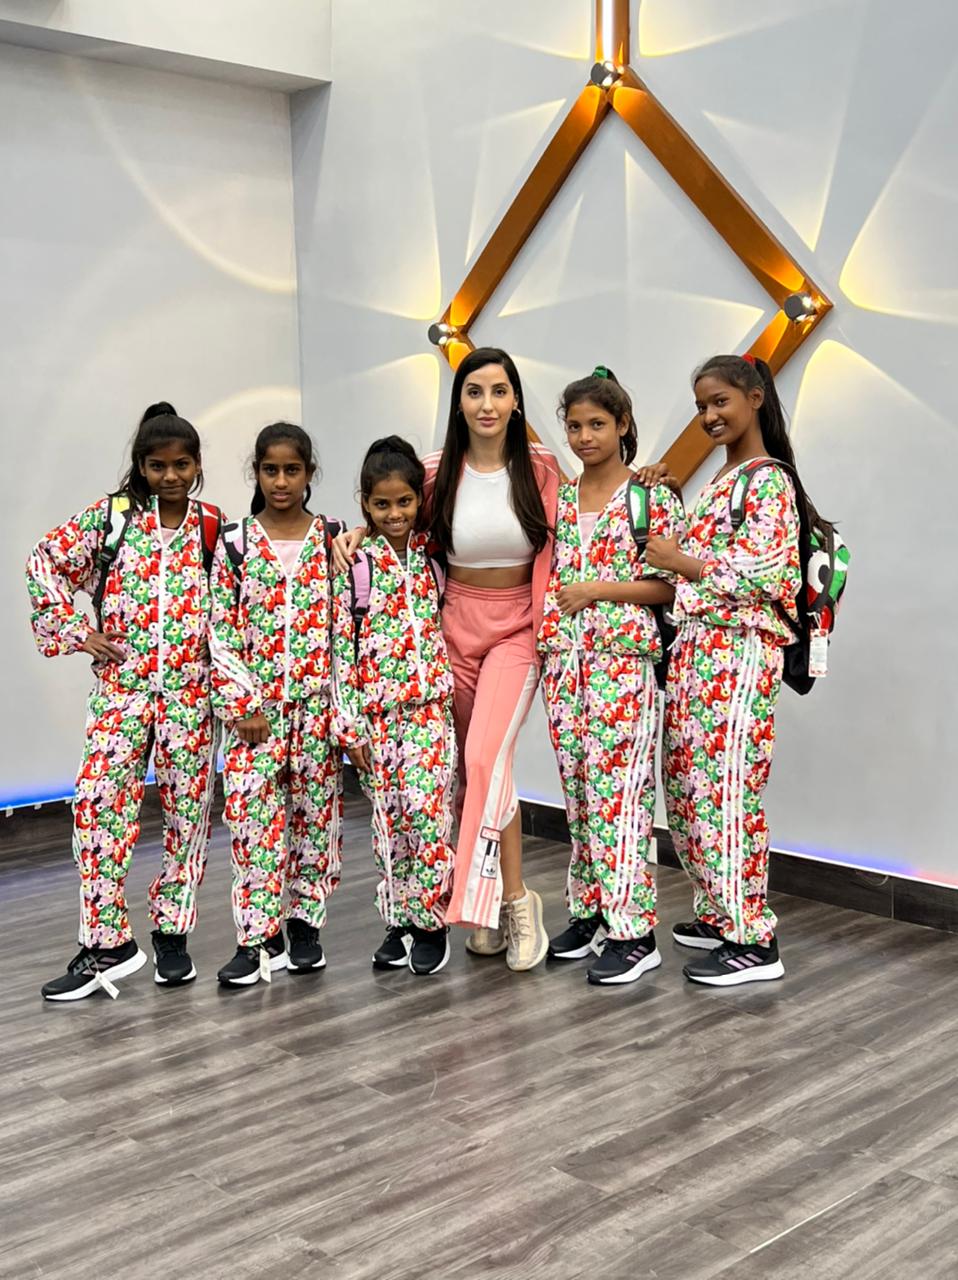 Nora Fatehi gifts dancing gear to underprivileged contestants on Dance Deewane Juniors